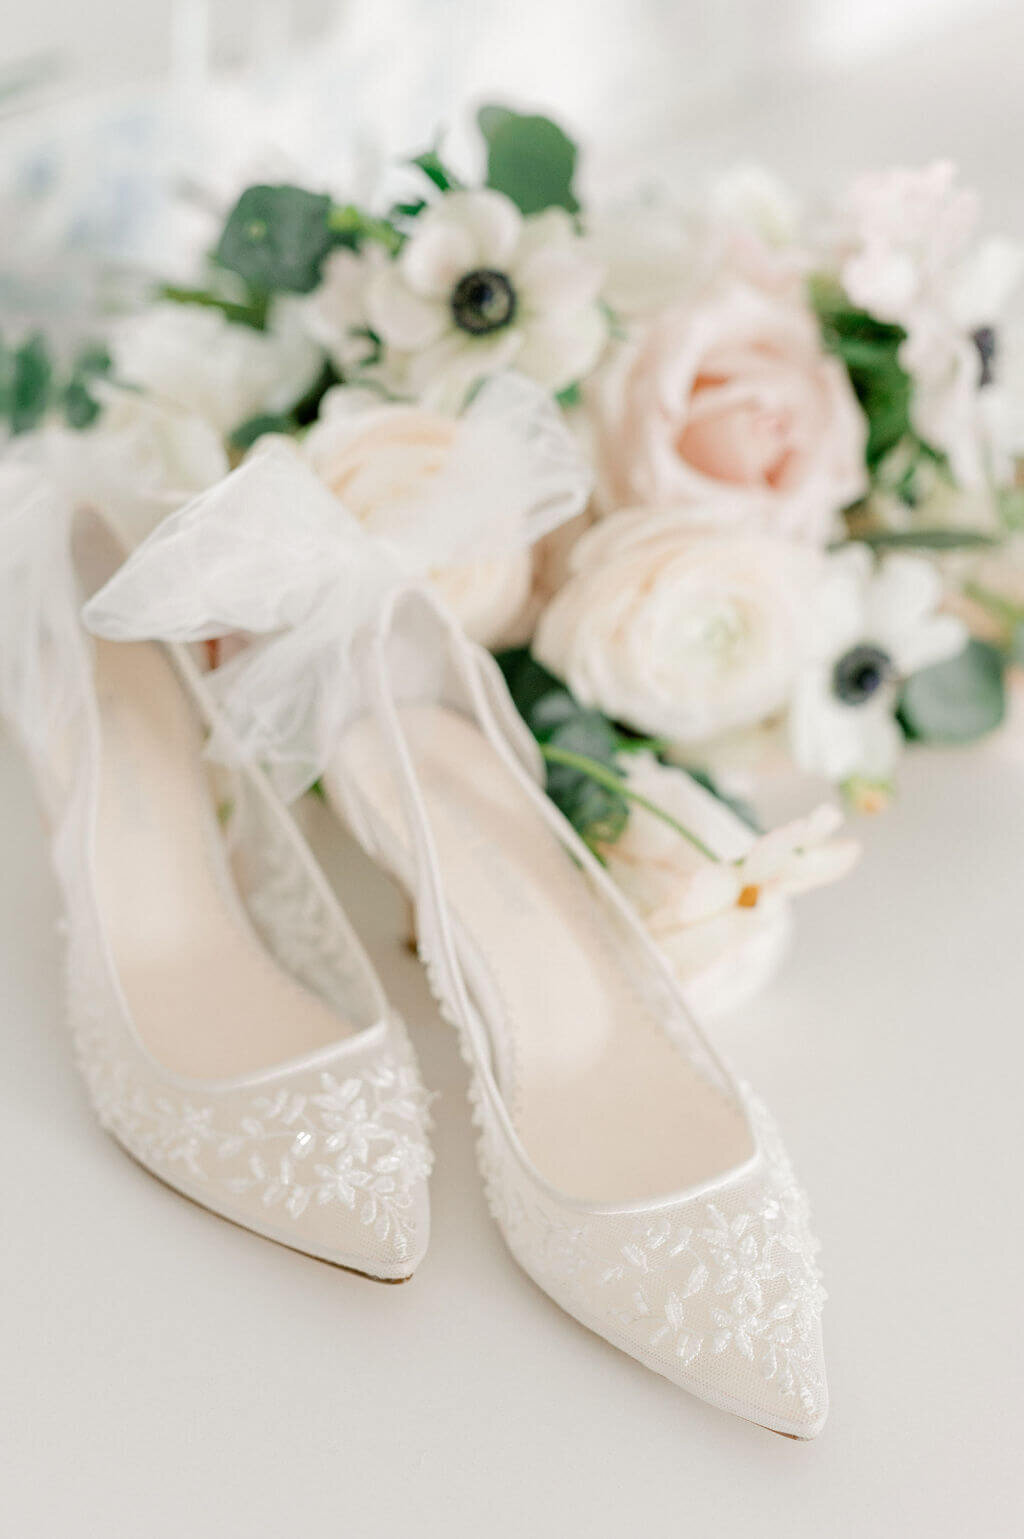 White lace bella belle bridal shoes